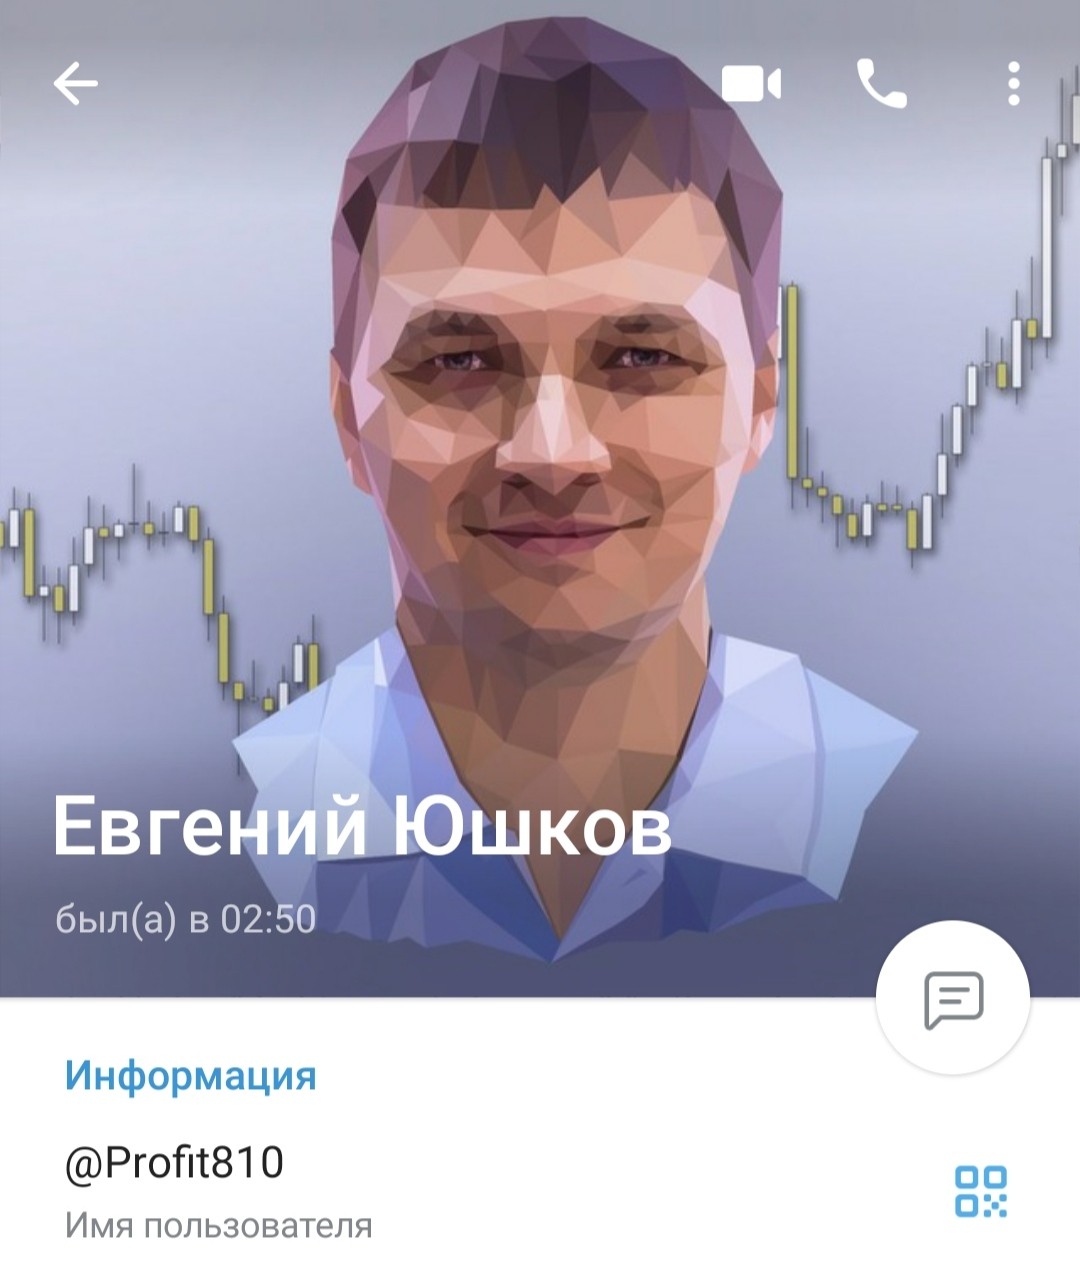 Евгений Юшков проект home trading